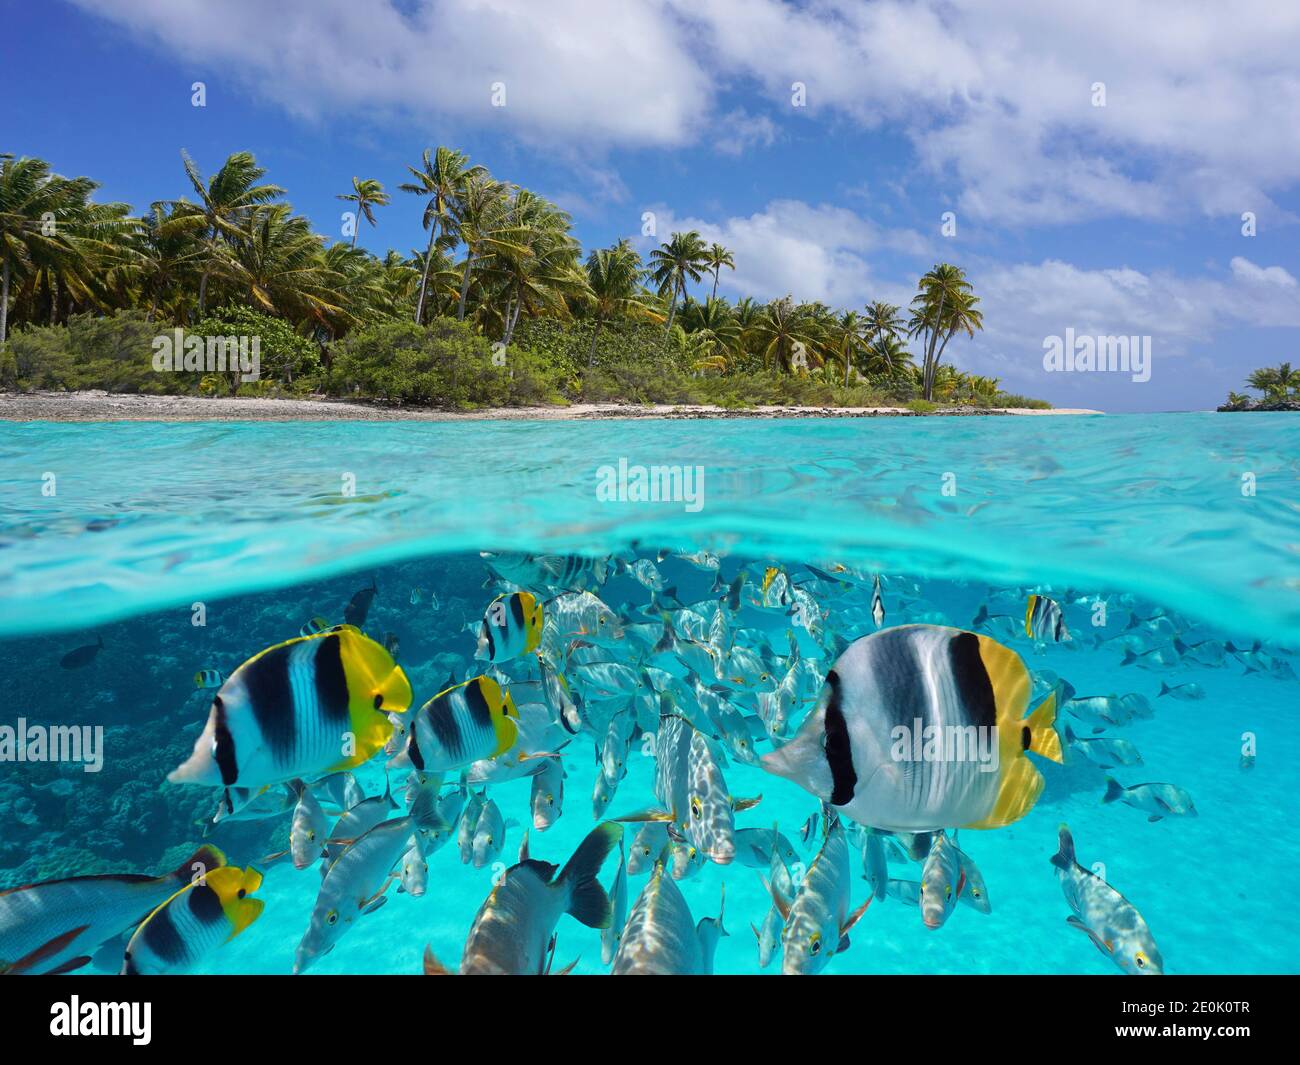 Paisaje marino tropical sobre y debajo del agua, costa de la isla y grupo de peces bajo el agua, océano Pacífico, Polinesia Francesa, Oceanía Foto de stock